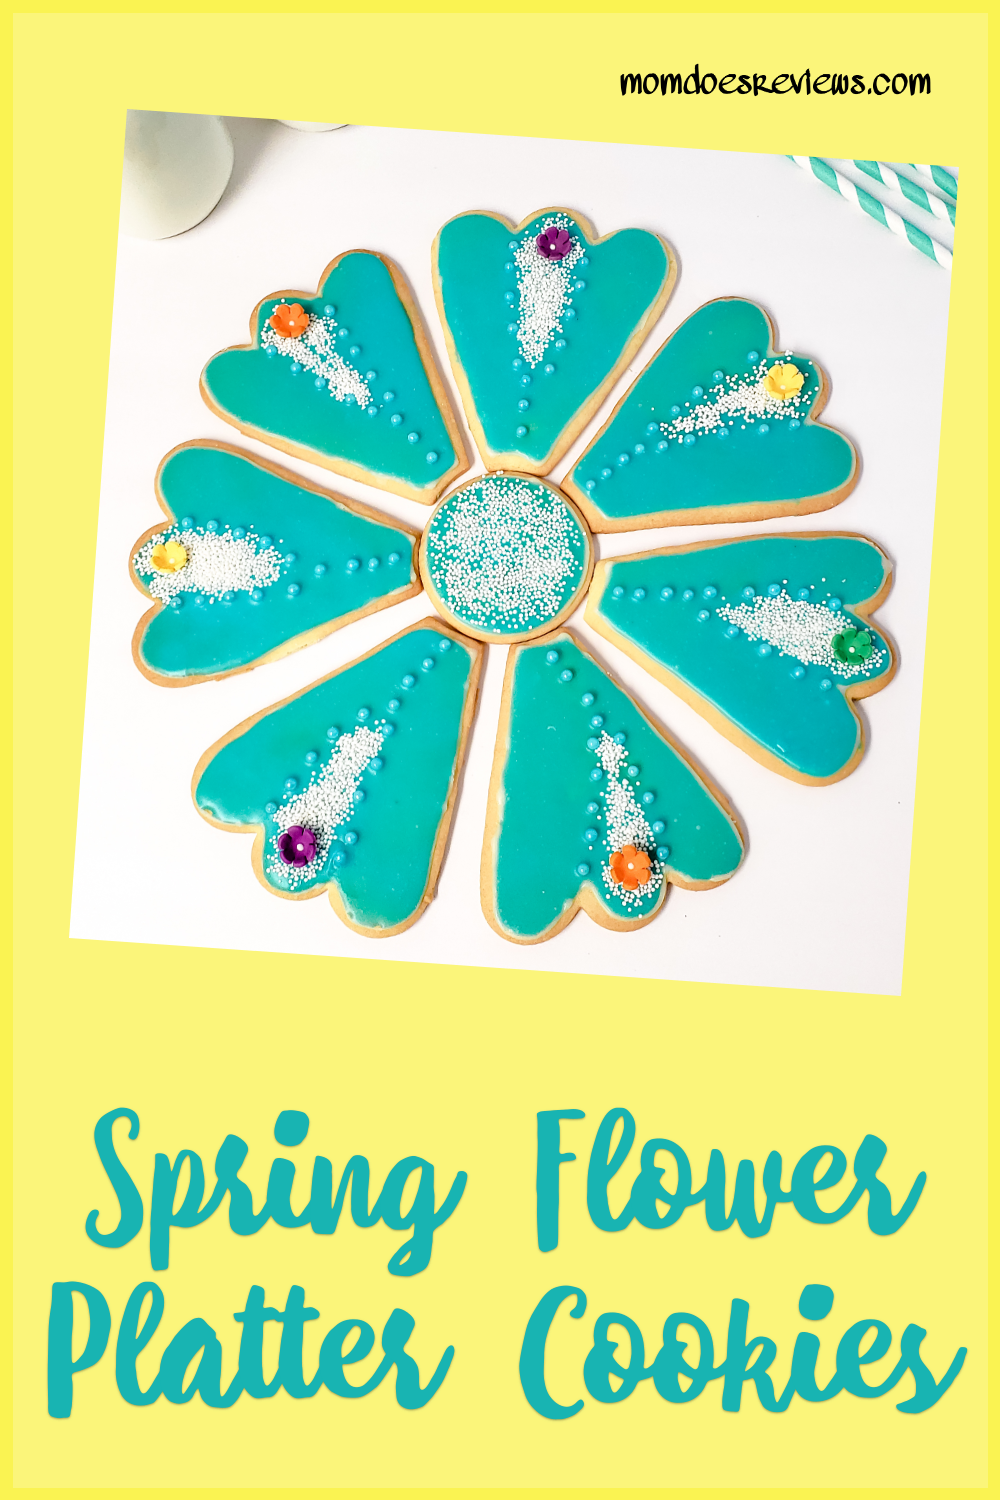 Beautiful Spring Flower Platter Cookies 